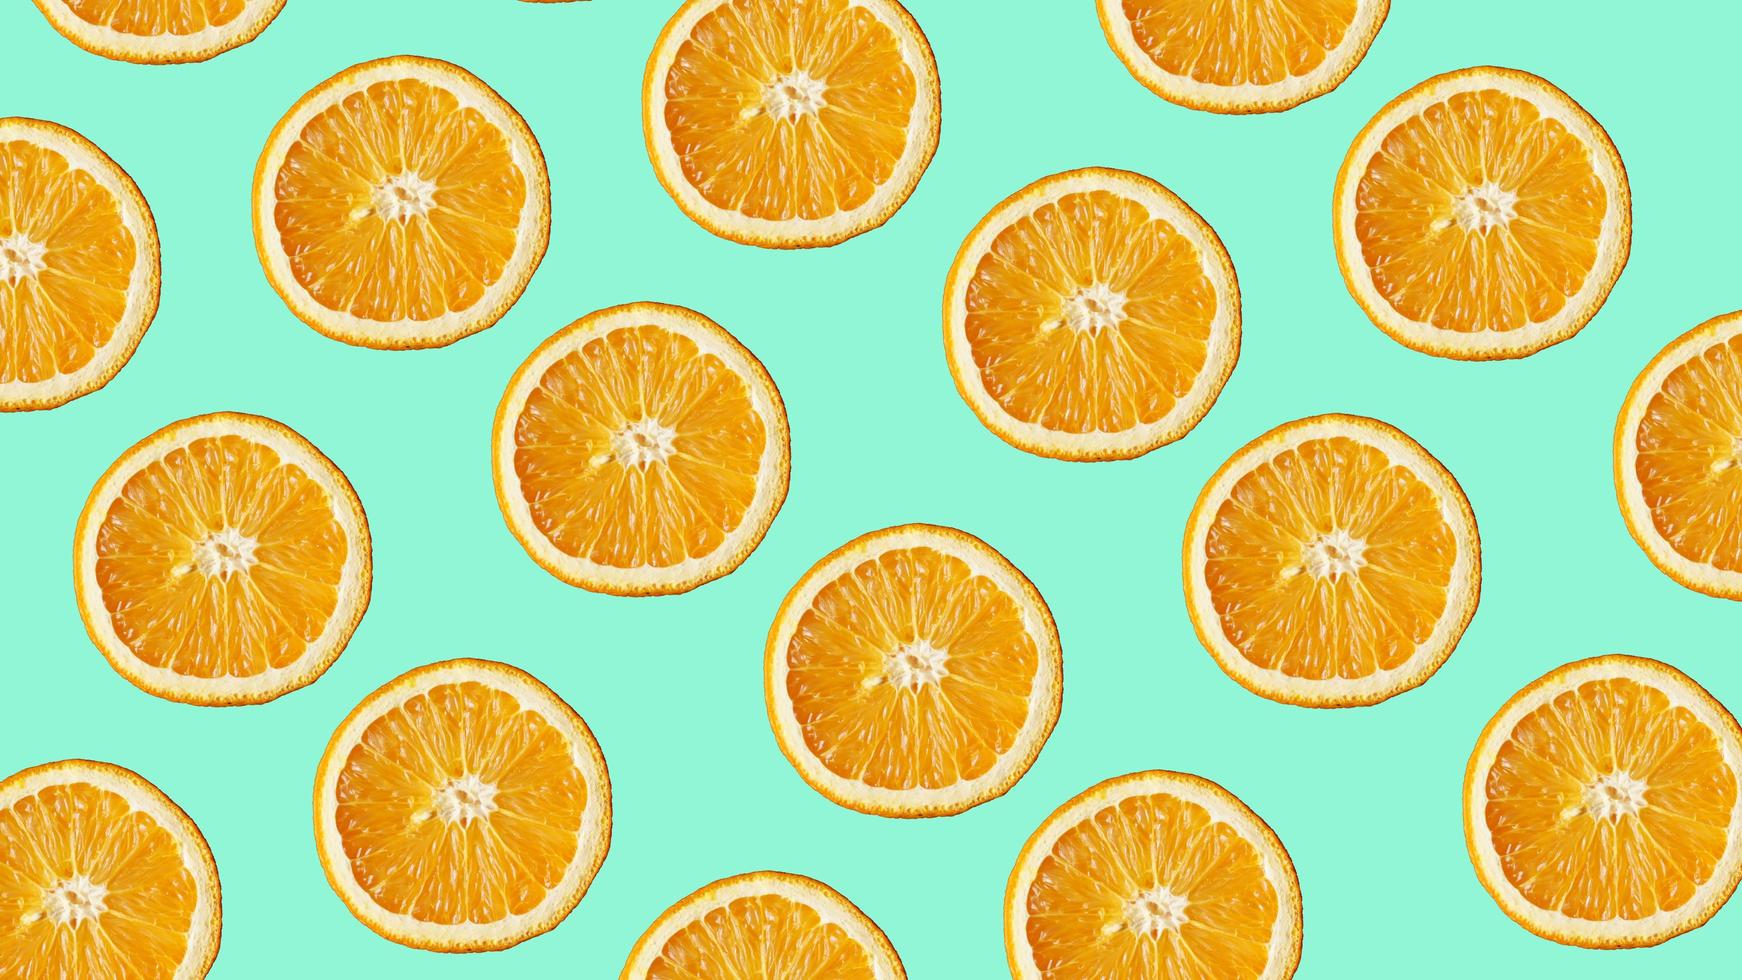 padrão de frutas coloridas de fatias de laranja frescas em azul foto